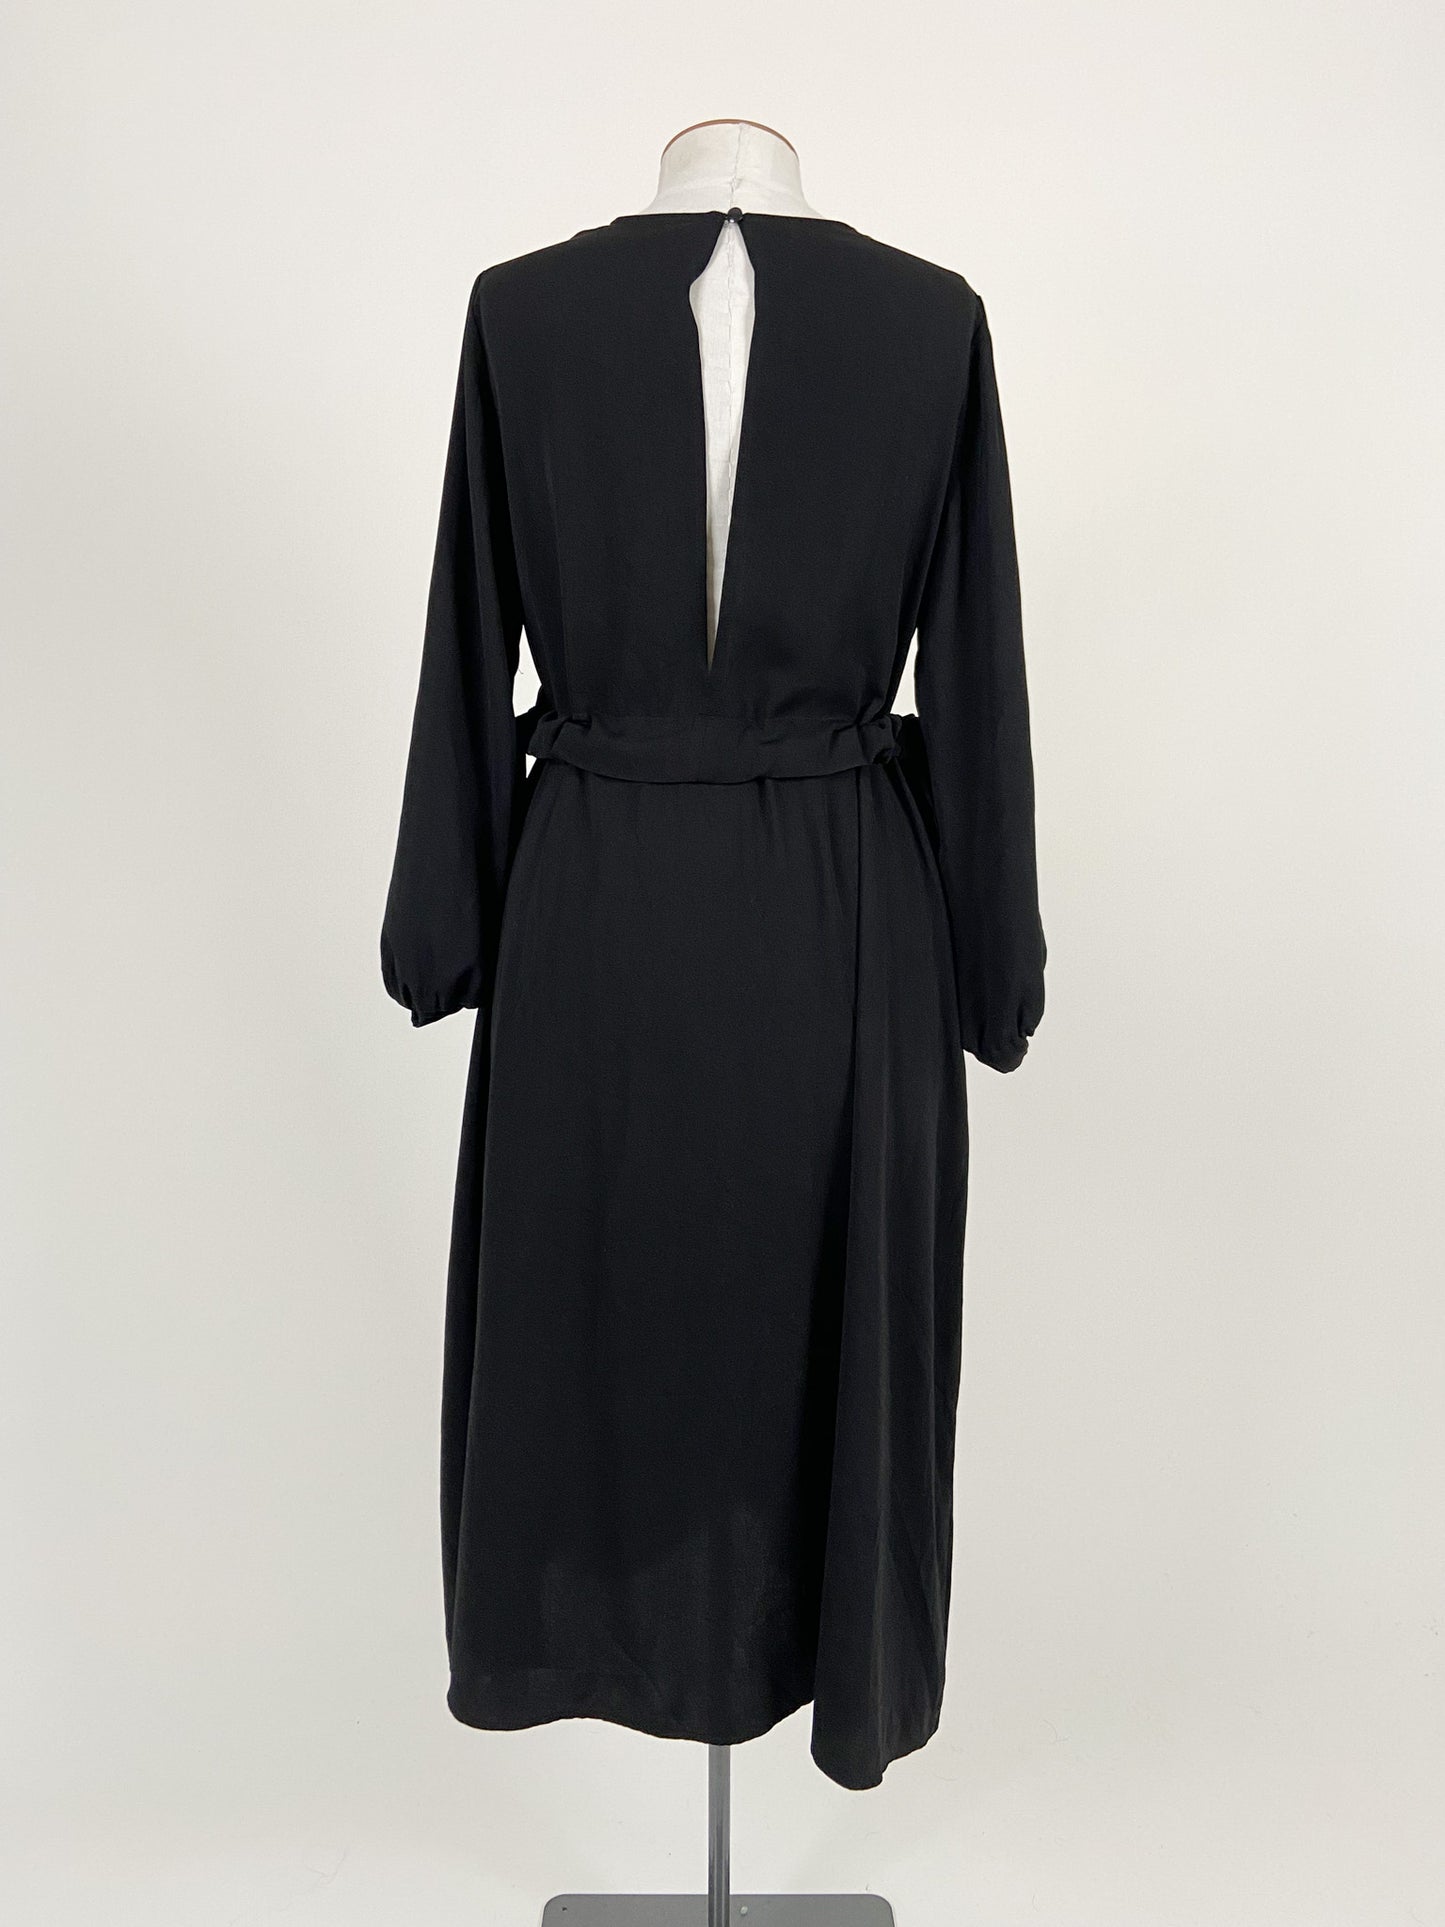 ASOS | Black Cocktail/Formal Dress | Size 10